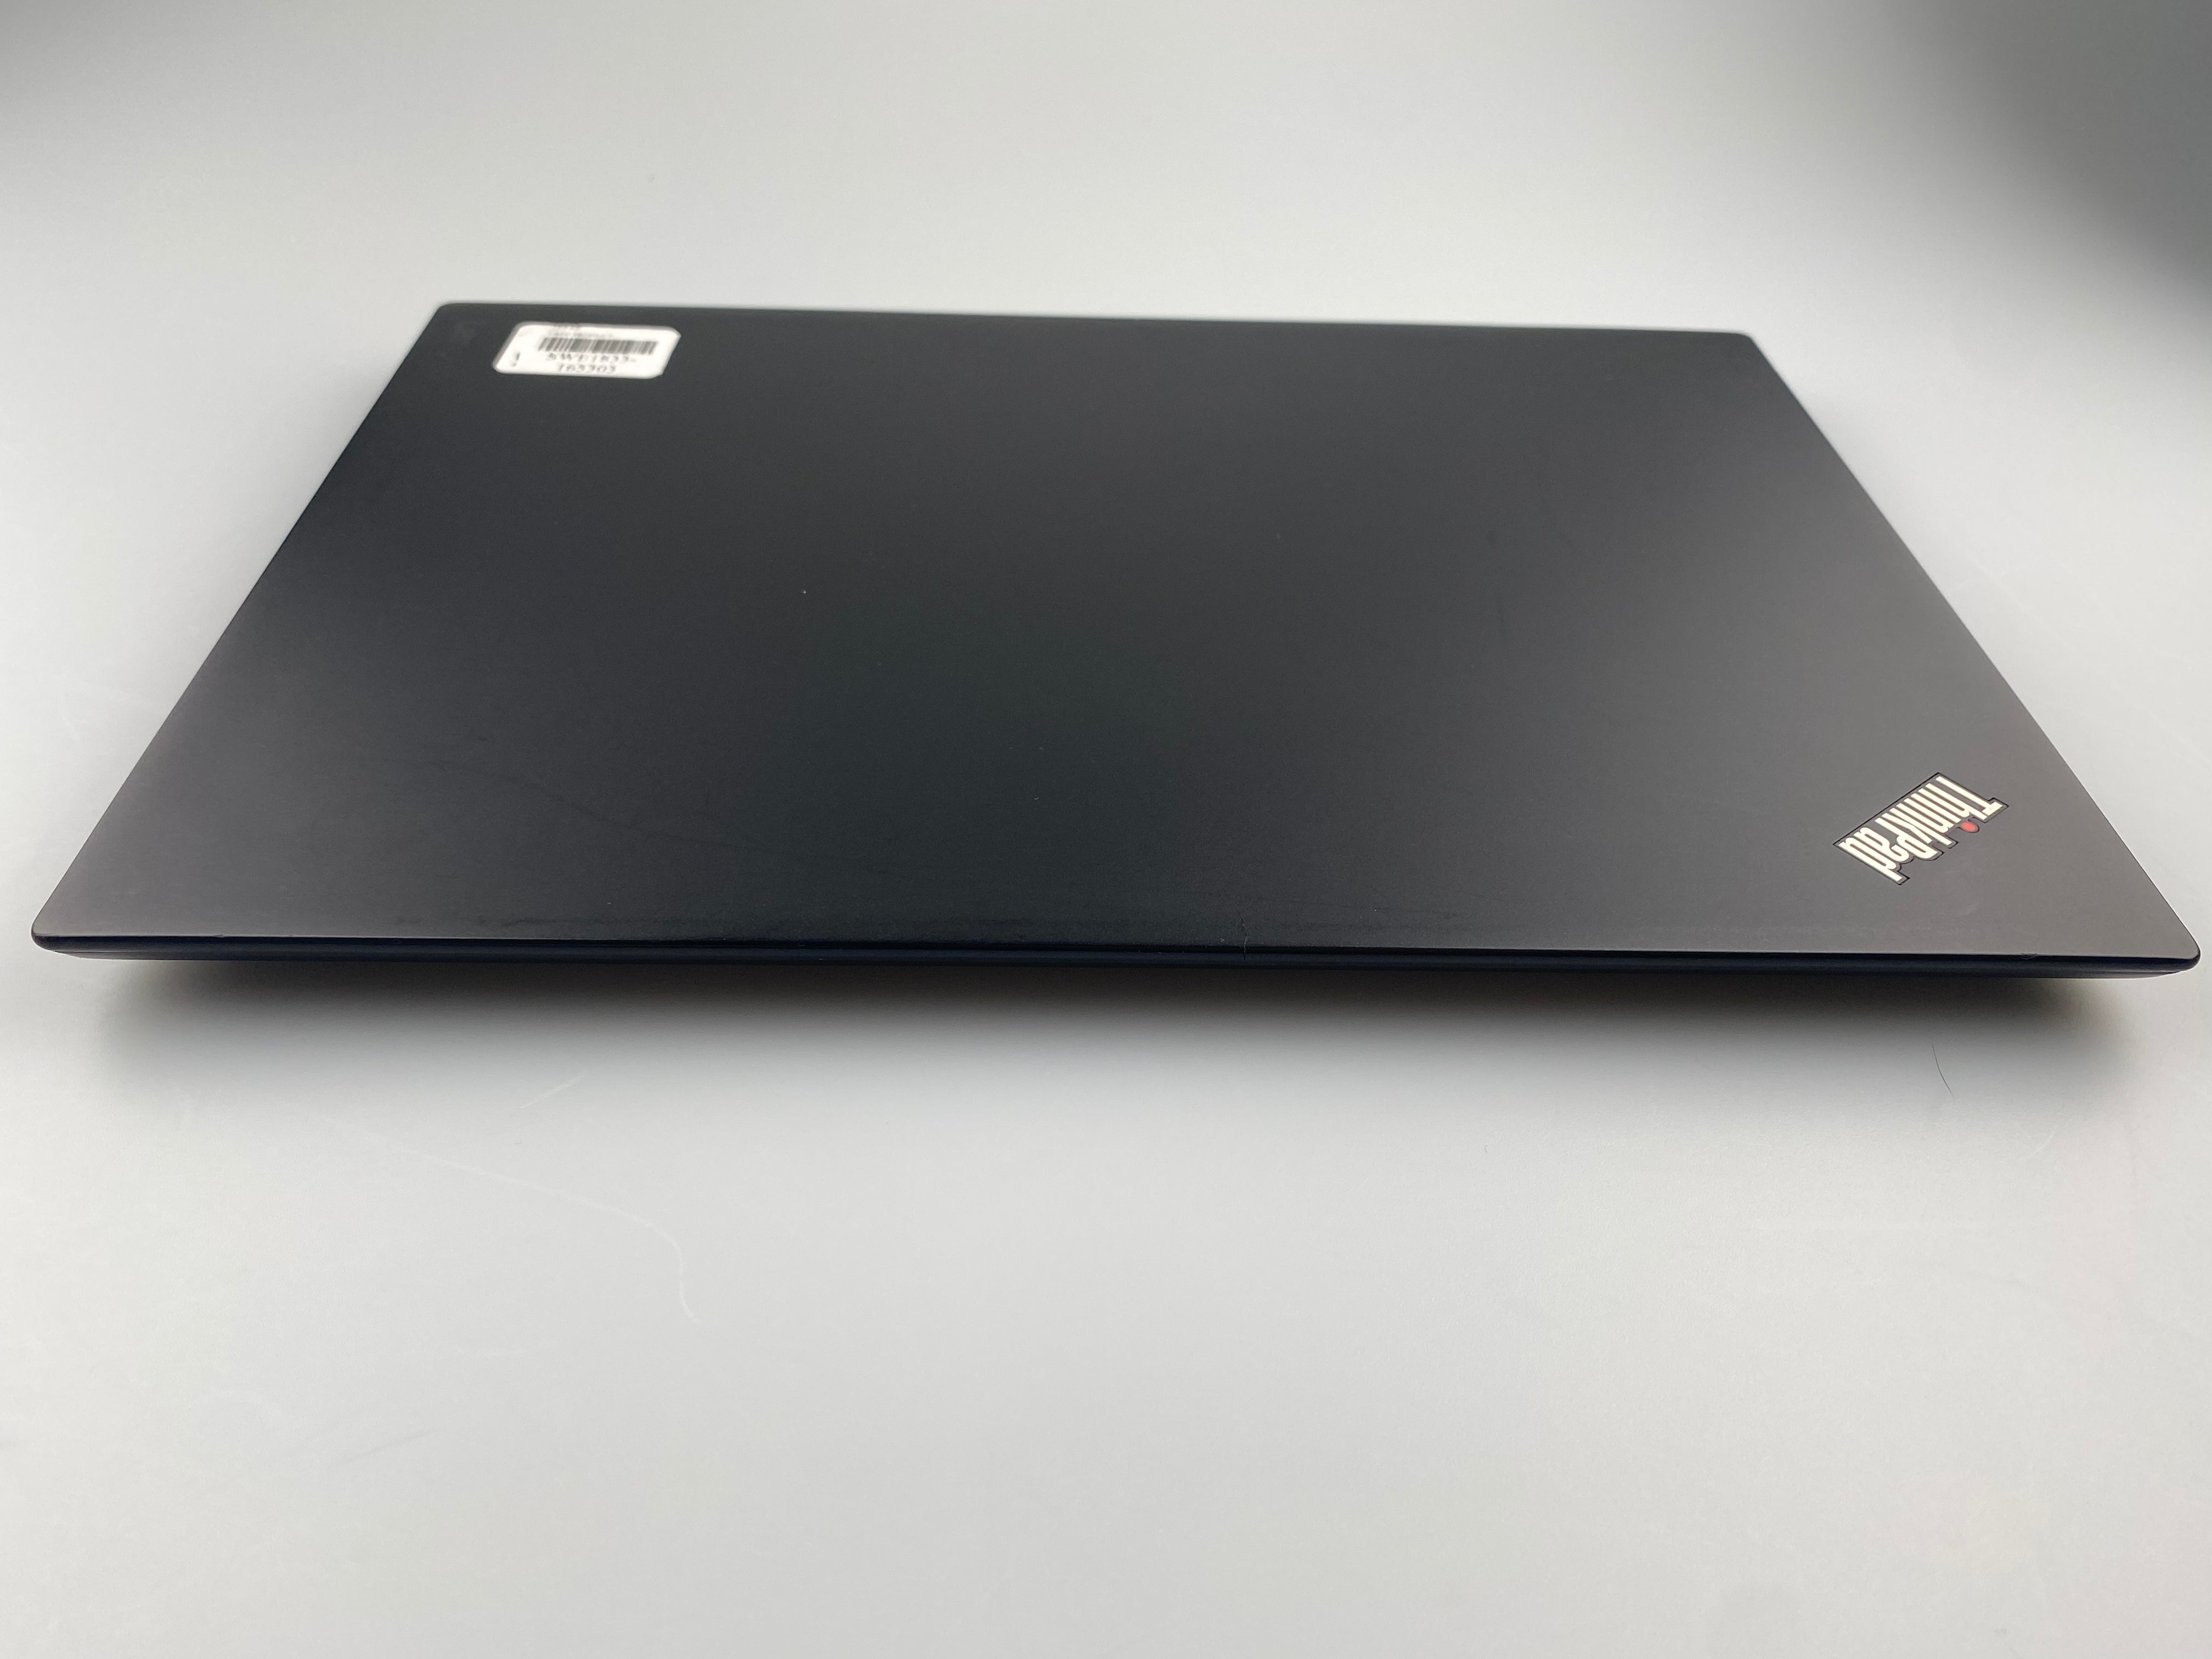 Lenovo ThinkPad T470S  W10DG 14" i5-7400U 2.60GHz 256GB HDD 2017